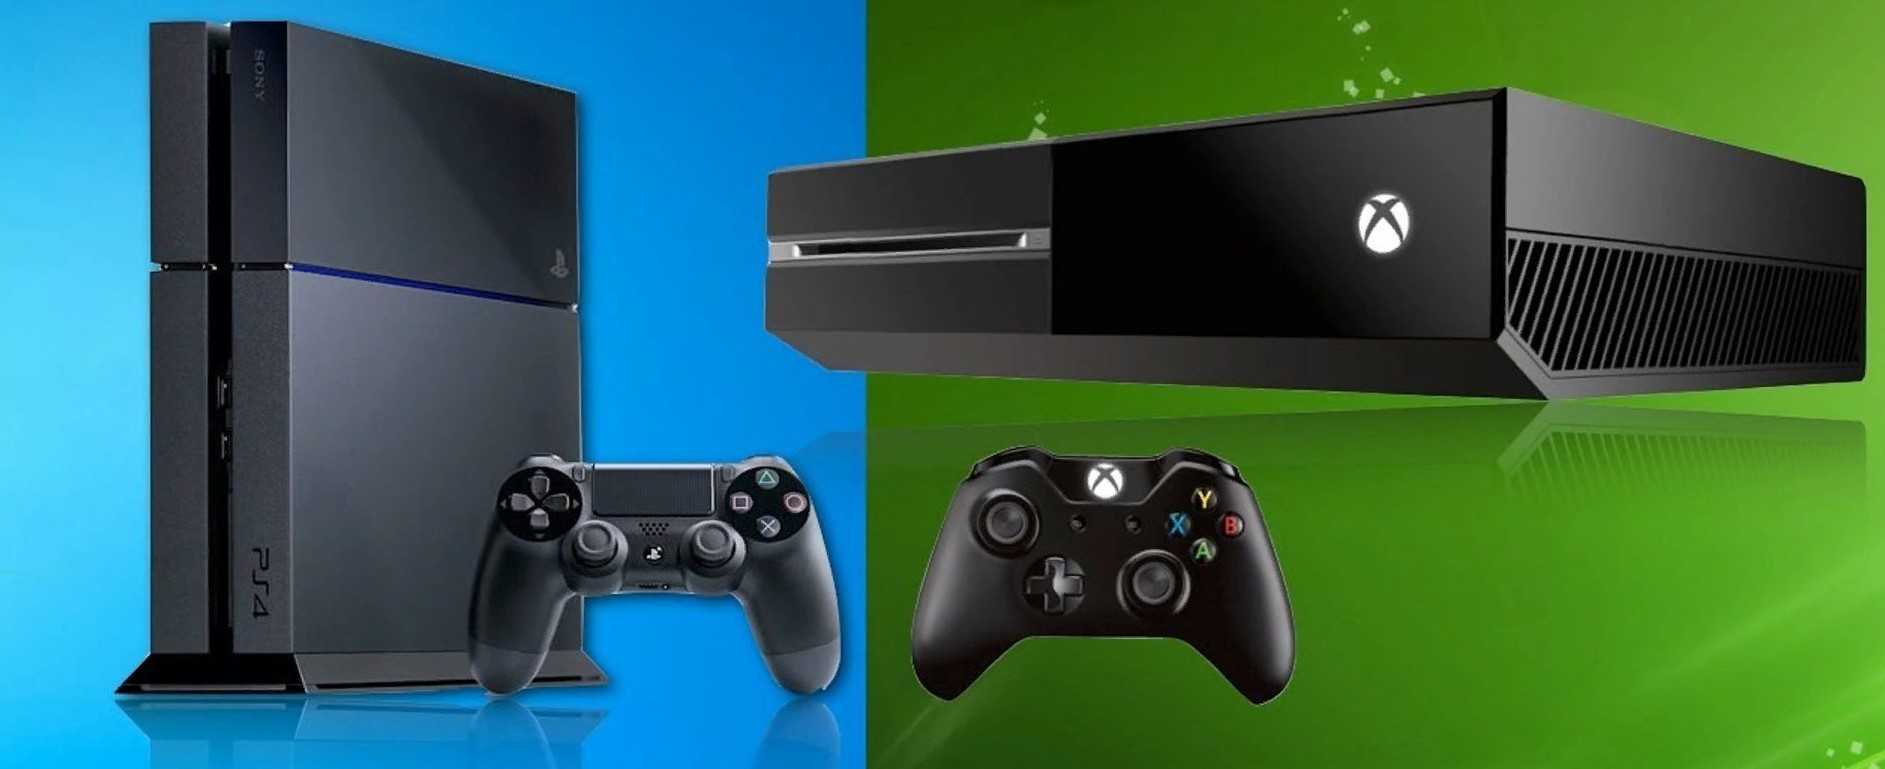 Xbox vs playstation 4. Ps4 Xbox 360 Nintendo Wii. Хбокс ПС 4. Xbox one или ps4. Консоли хбокс и ПС.